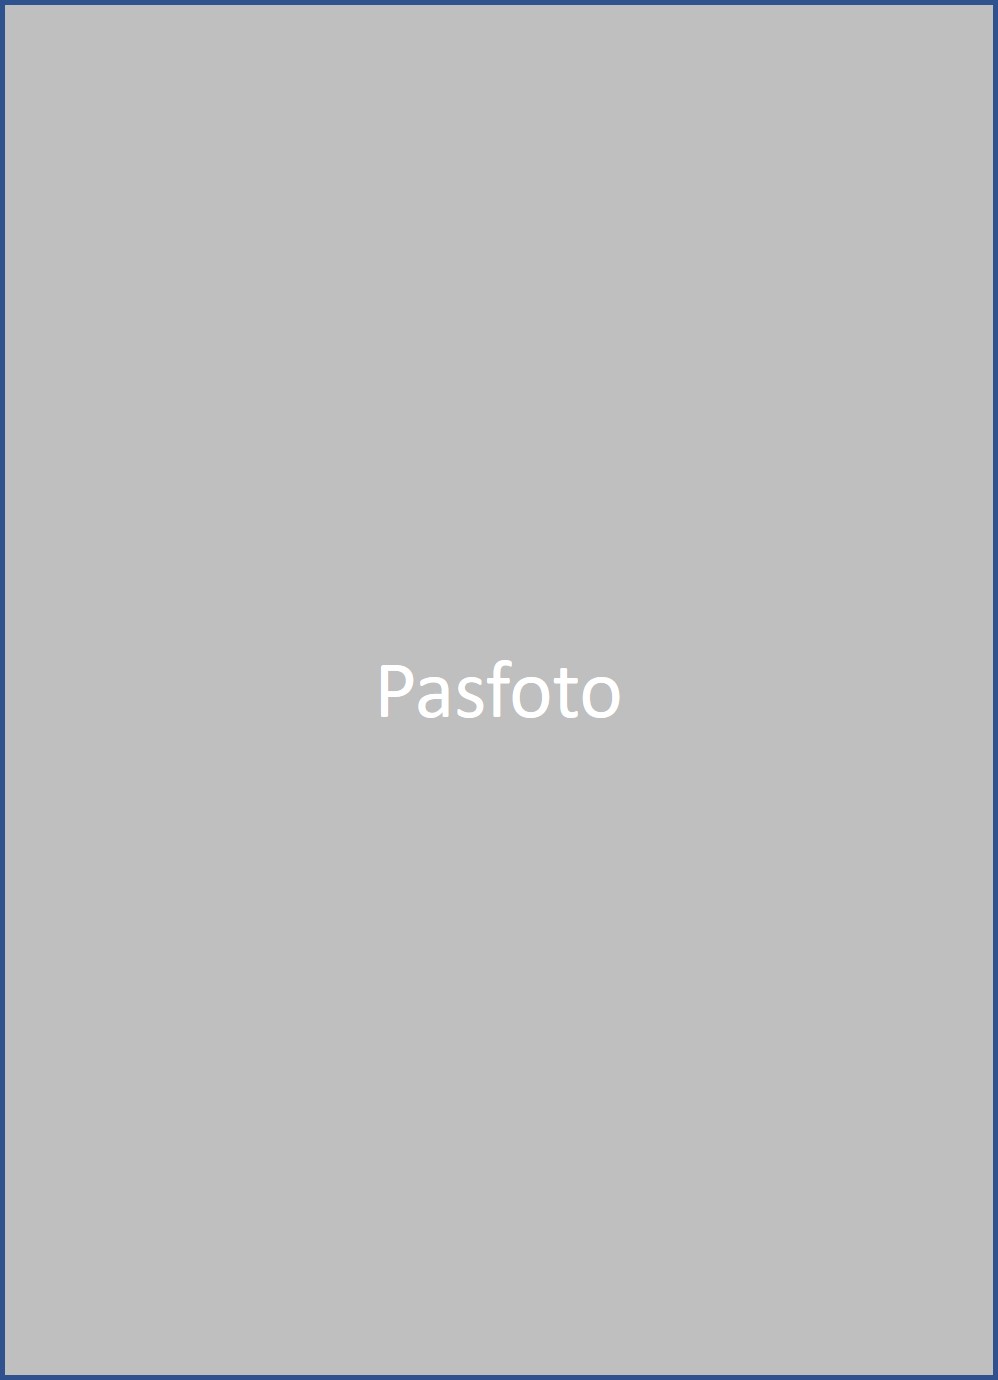 pasfoto placeholder